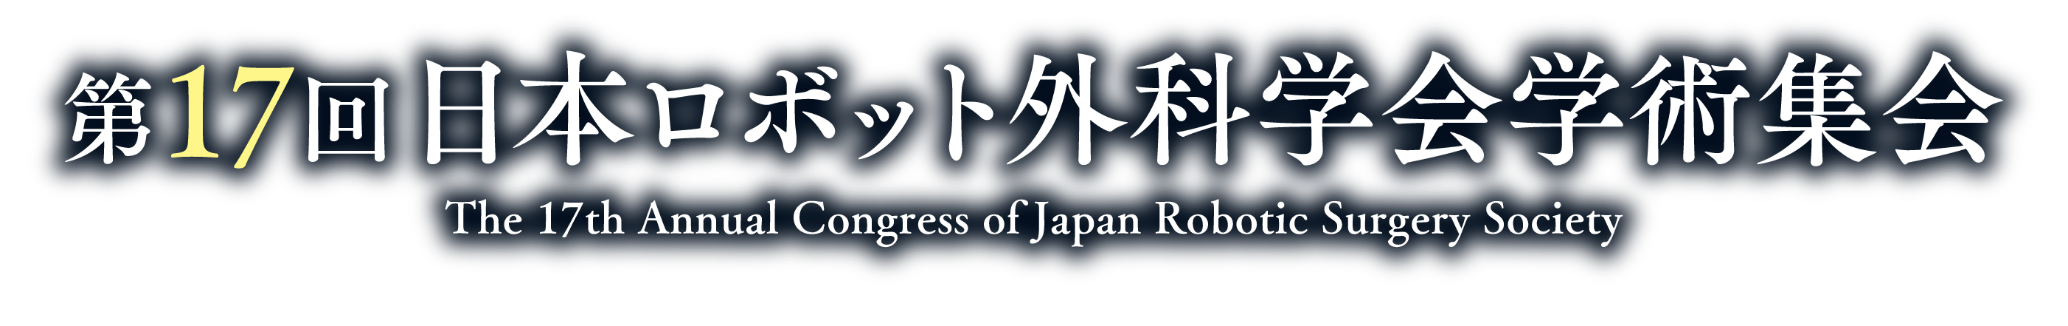 第17回日本ロボット外科学会学術集会